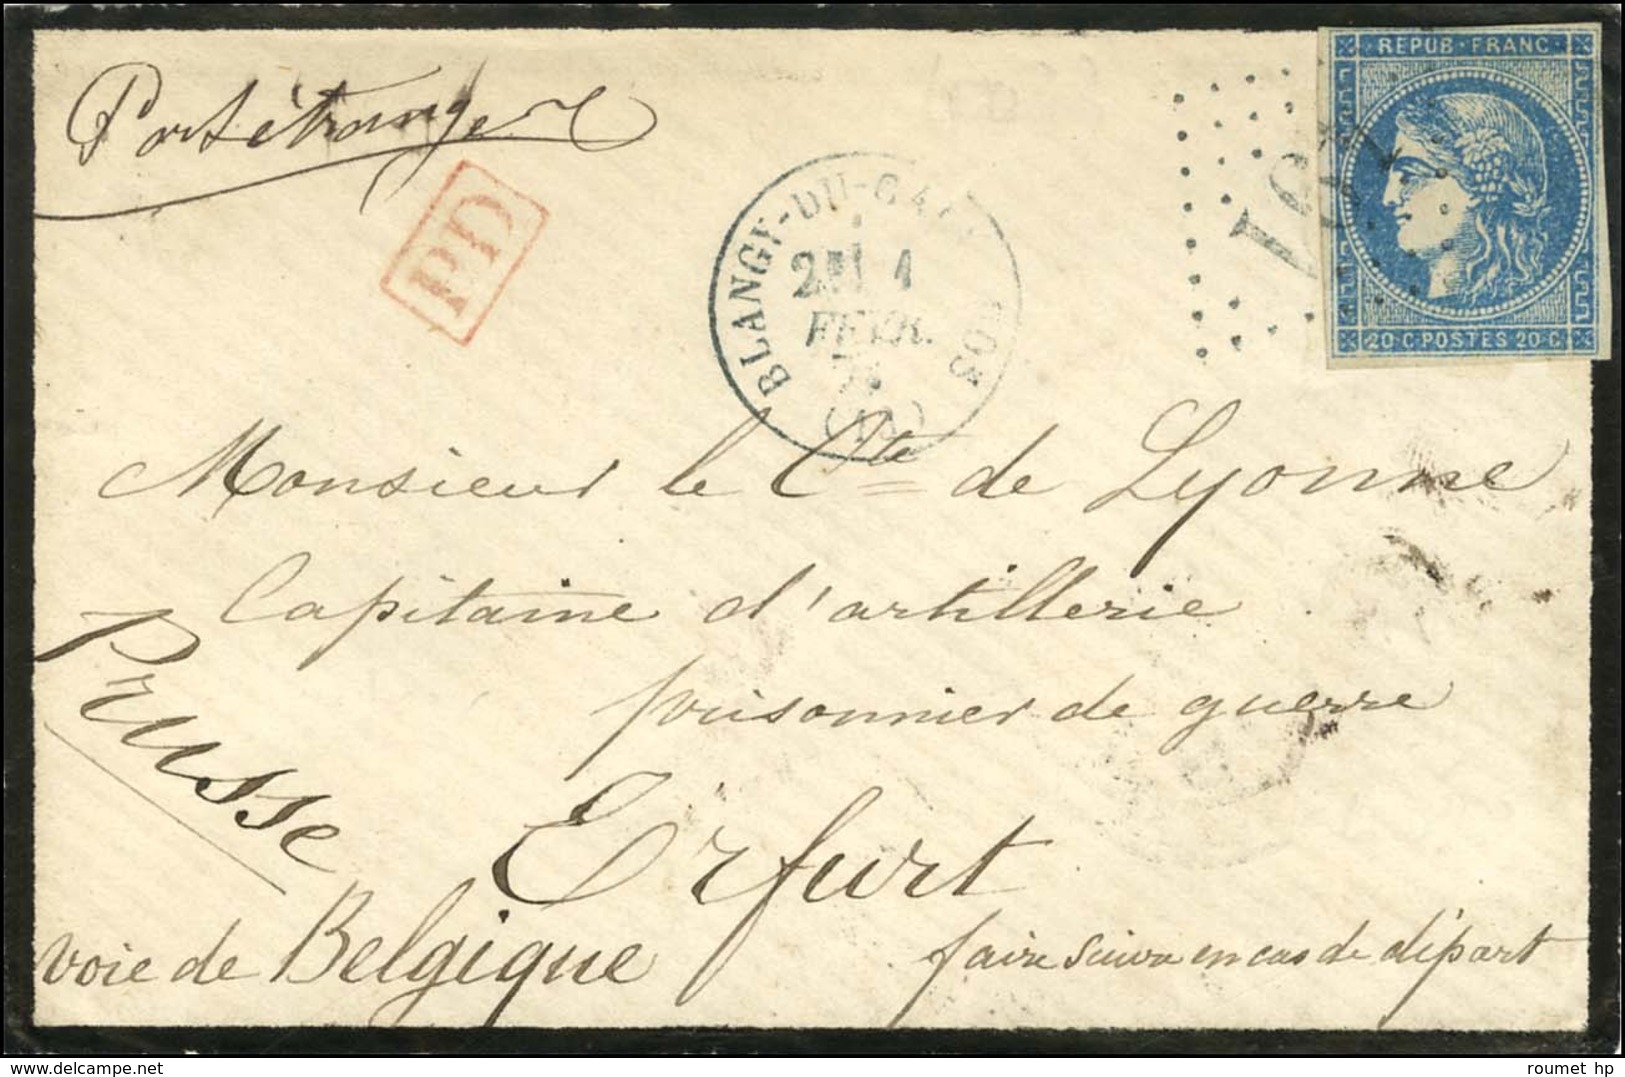 GC 491 / N° 45 Càd T 16 BLANGY DU CALVADOS (13) Sur Lettre Adressée à Un Prisonnier De Guerre à Erfurt Par La Voie De Be - 1870 Emission De Bordeaux